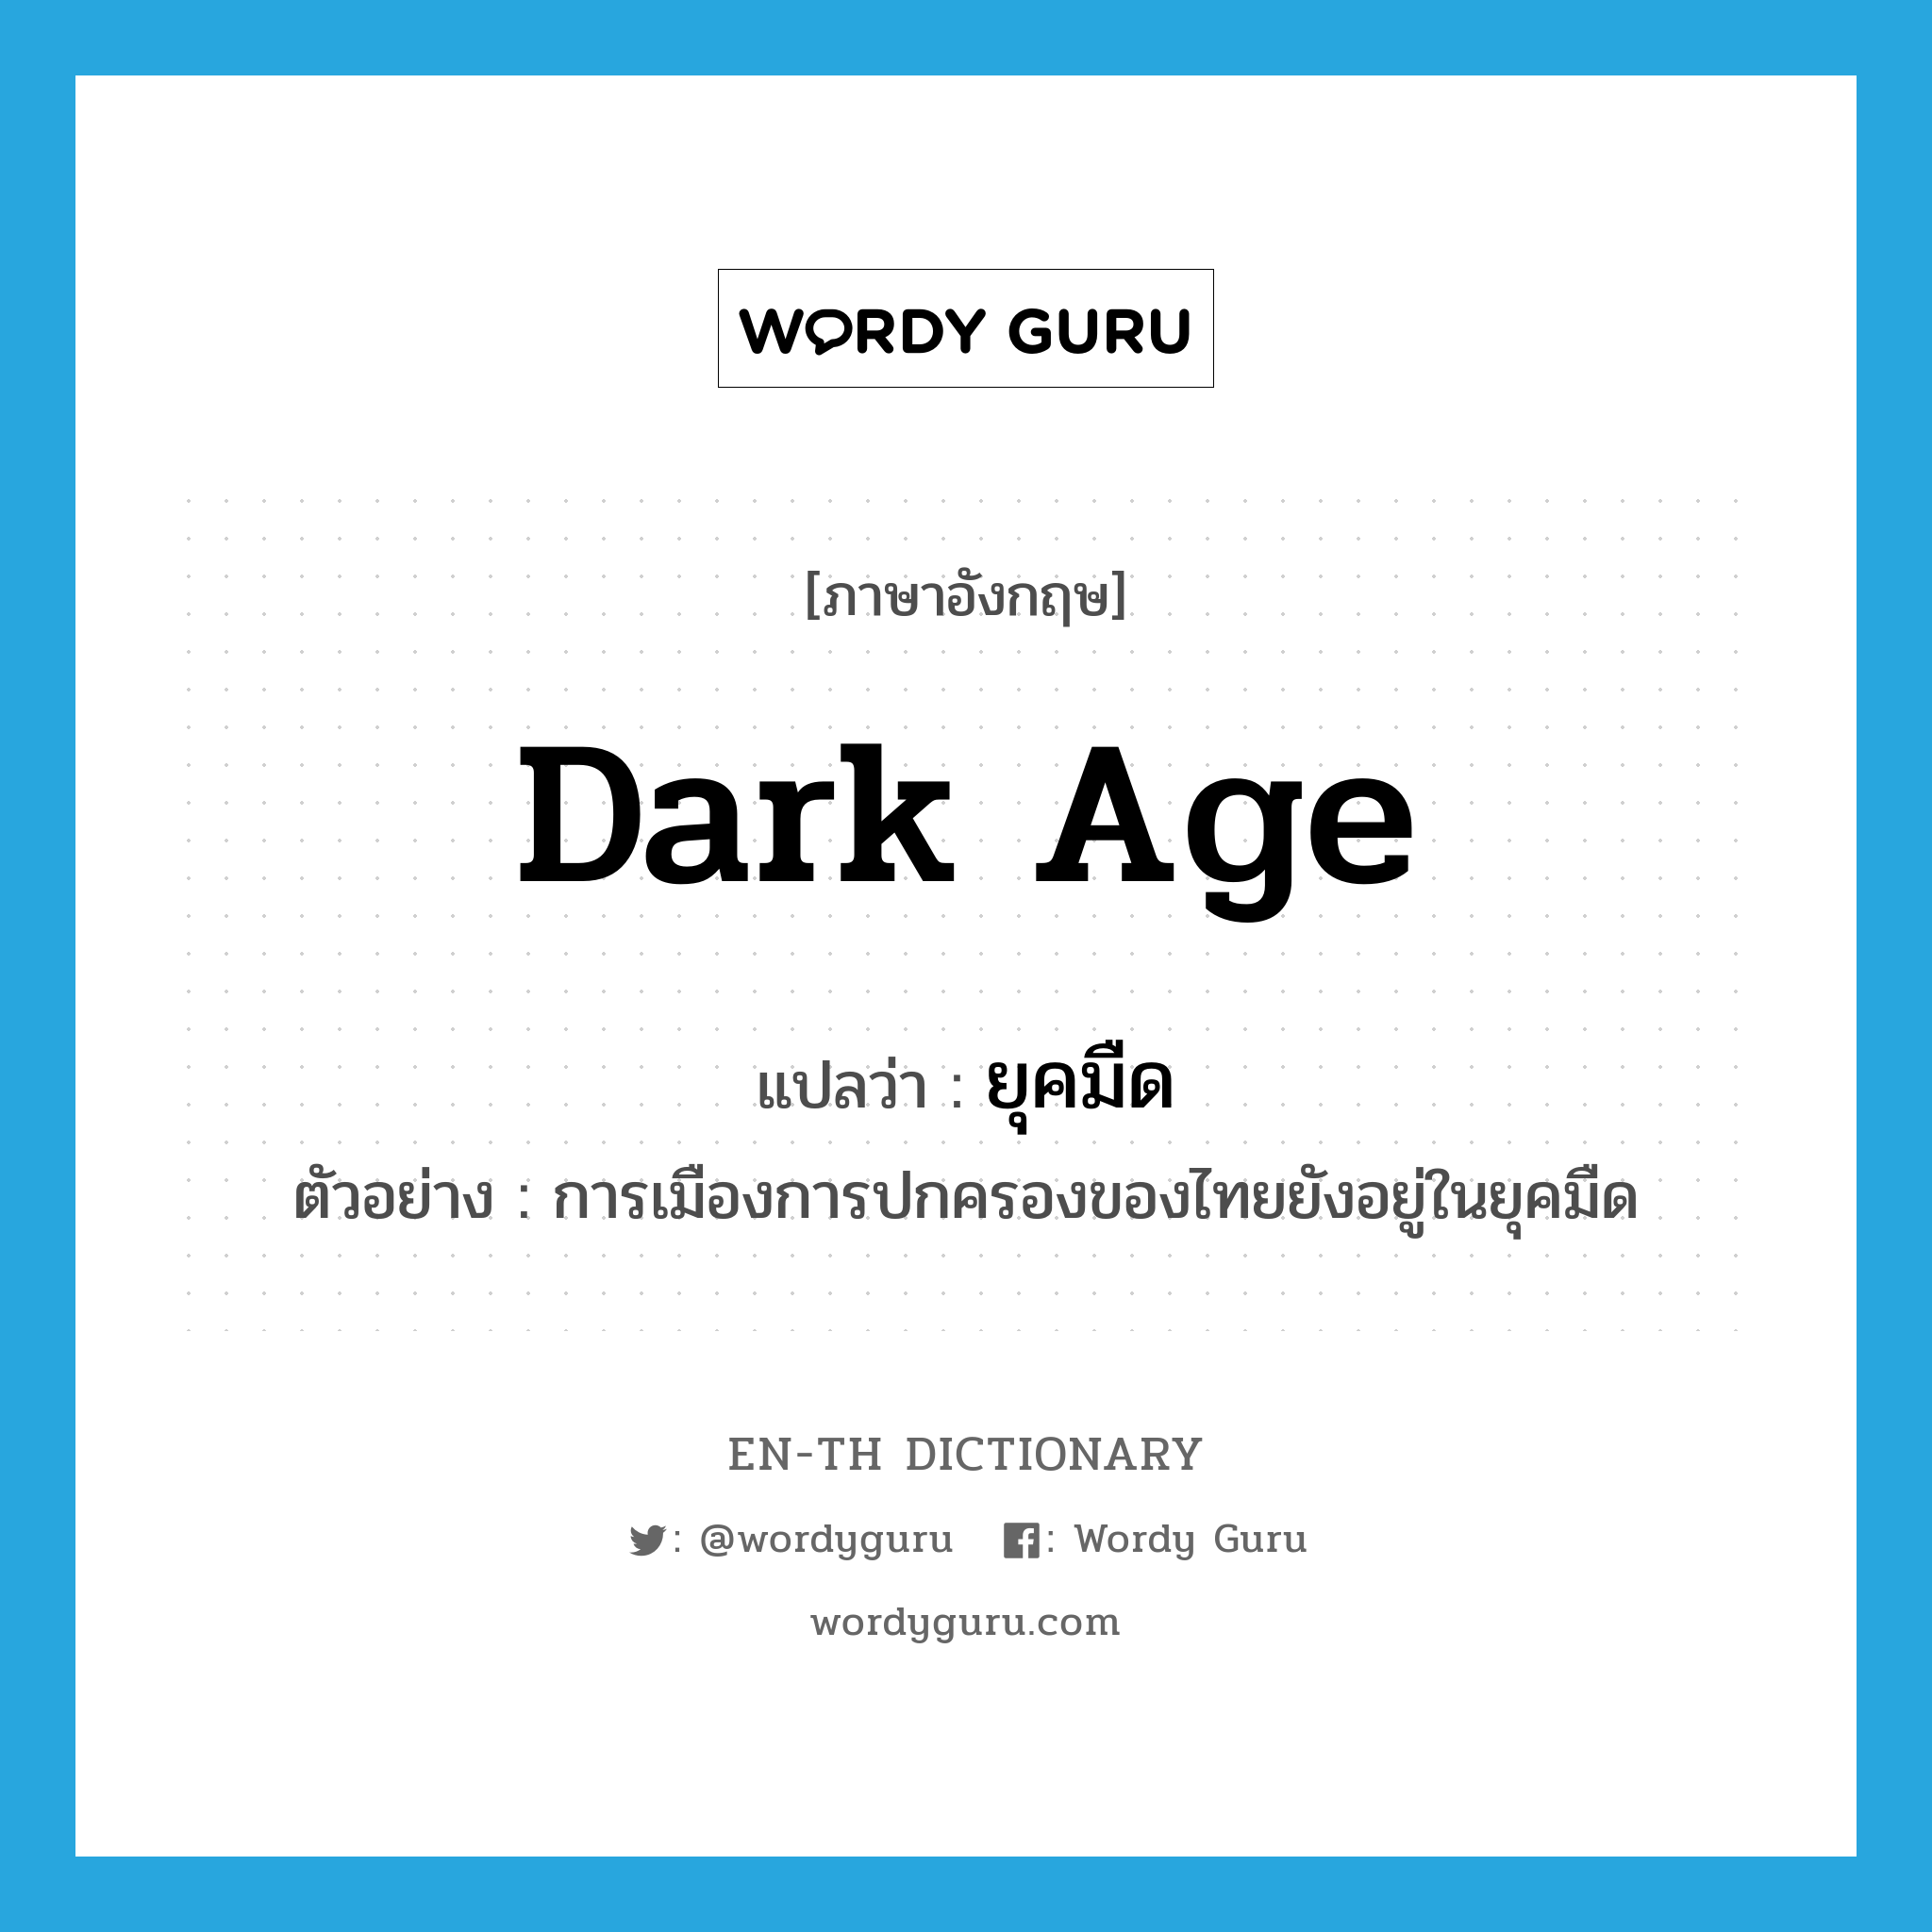 dark age แปลว่า?, คำศัพท์ภาษาอังกฤษ dark age แปลว่า ยุคมืด ประเภท N ตัวอย่าง การเมืองการปกครองของไทยยังอยู่ในยุคมืด หมวด N